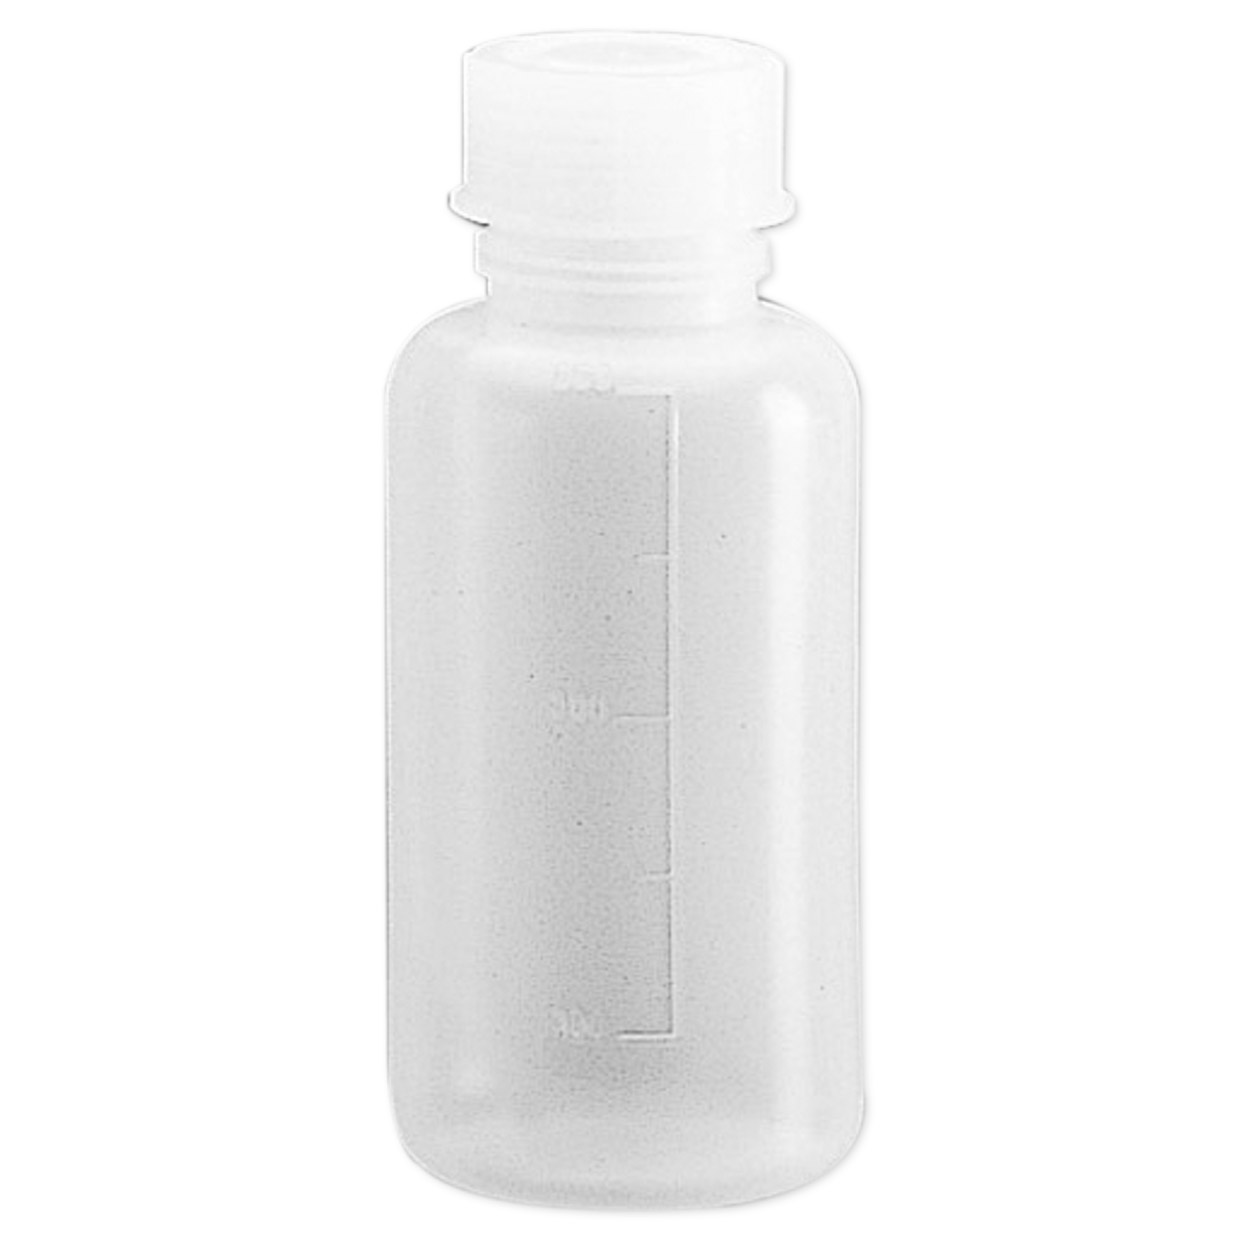 Laborflaschen, Skalierung 1000 ml Packung à 17 Stück